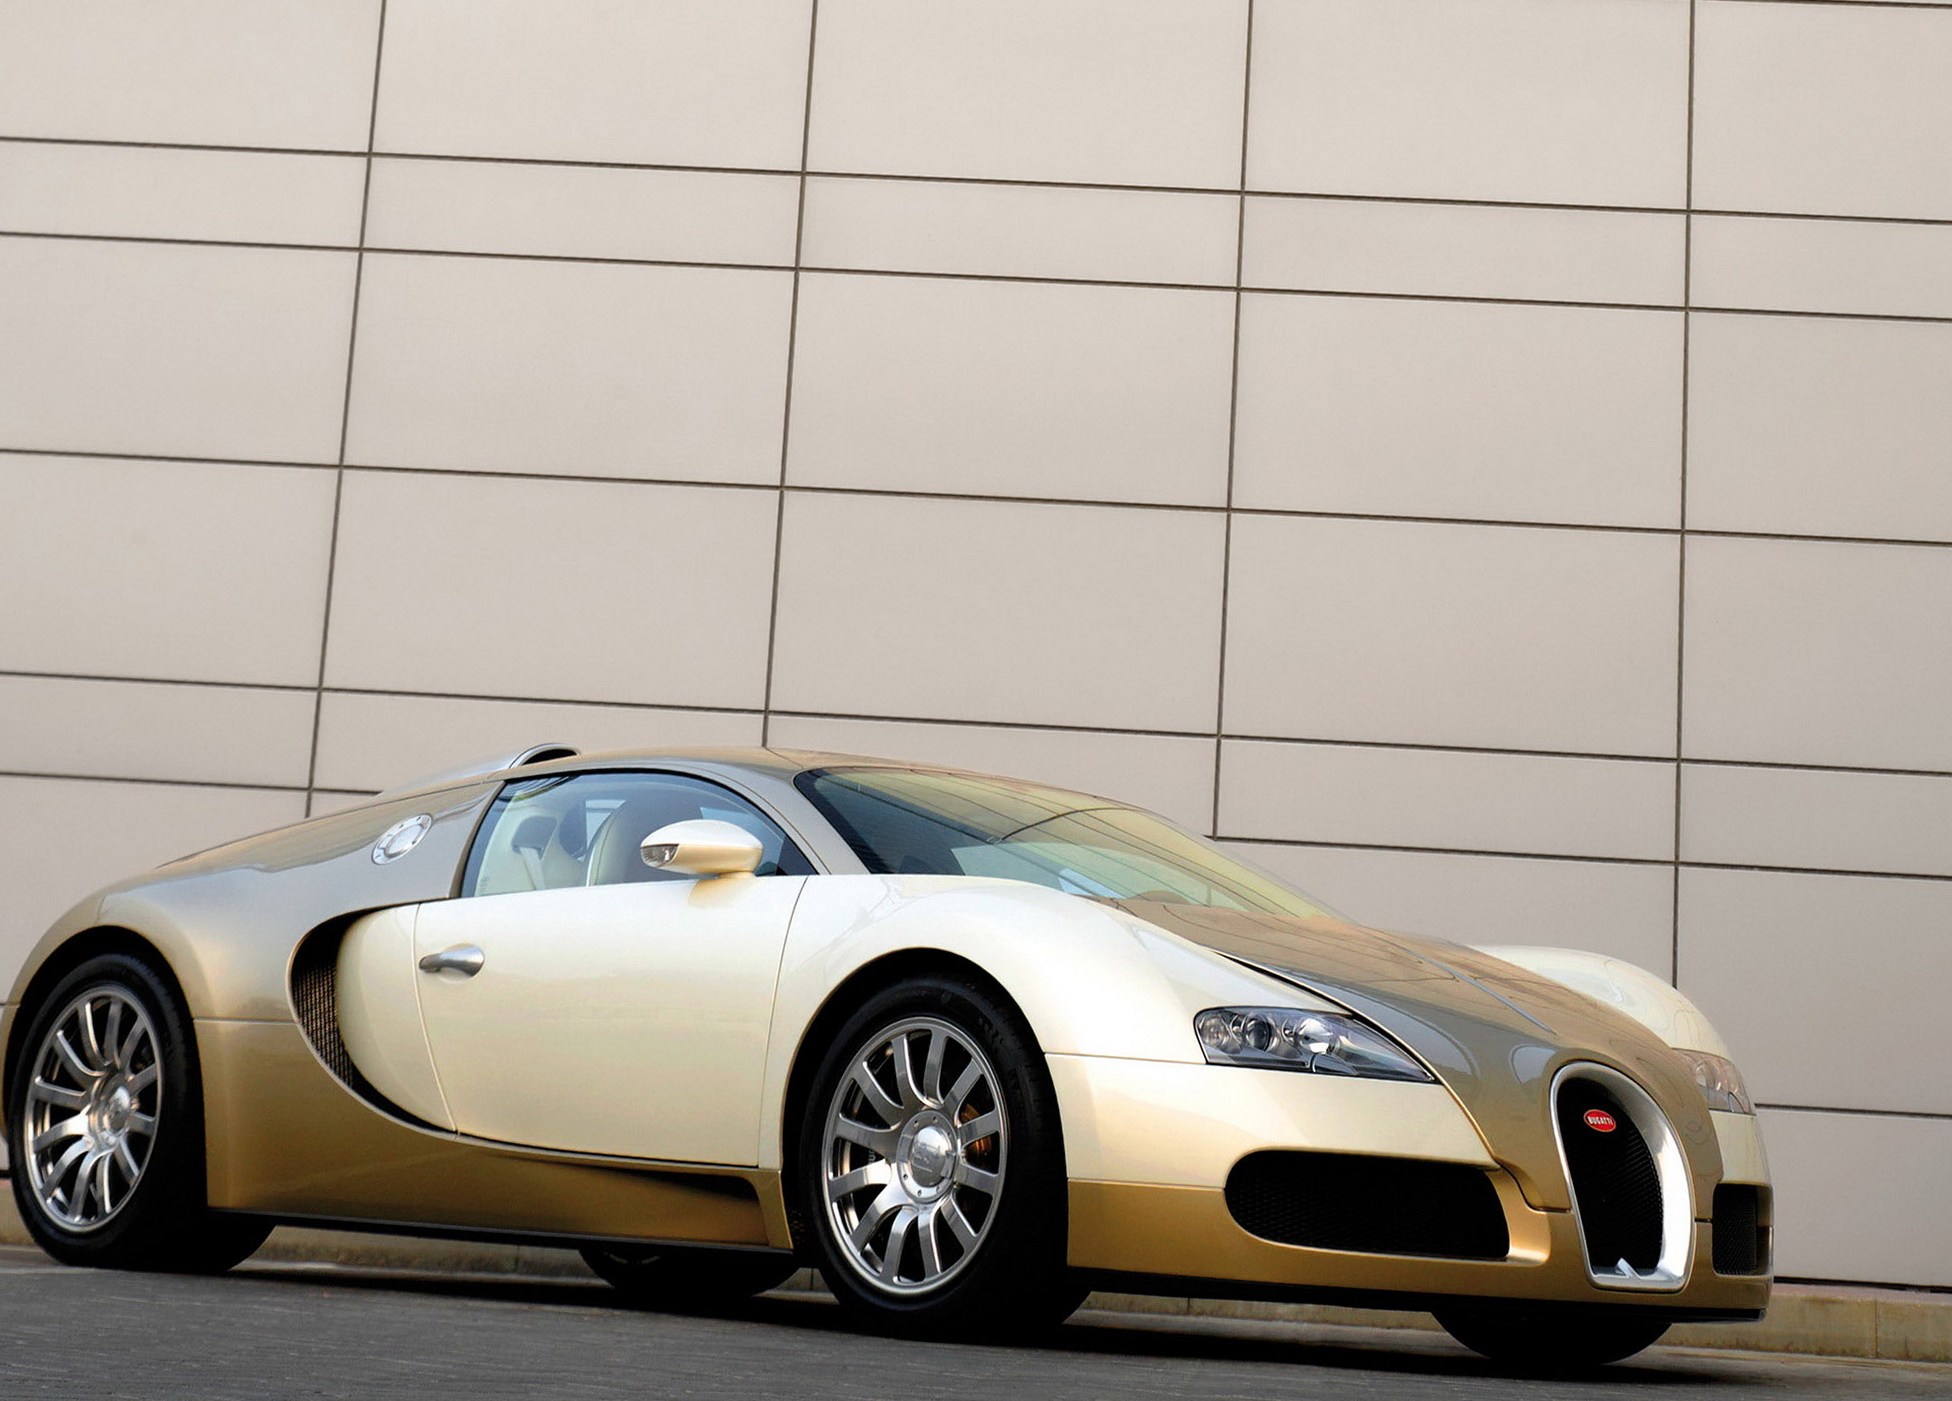 Of a bugatti picture Bugatti Images